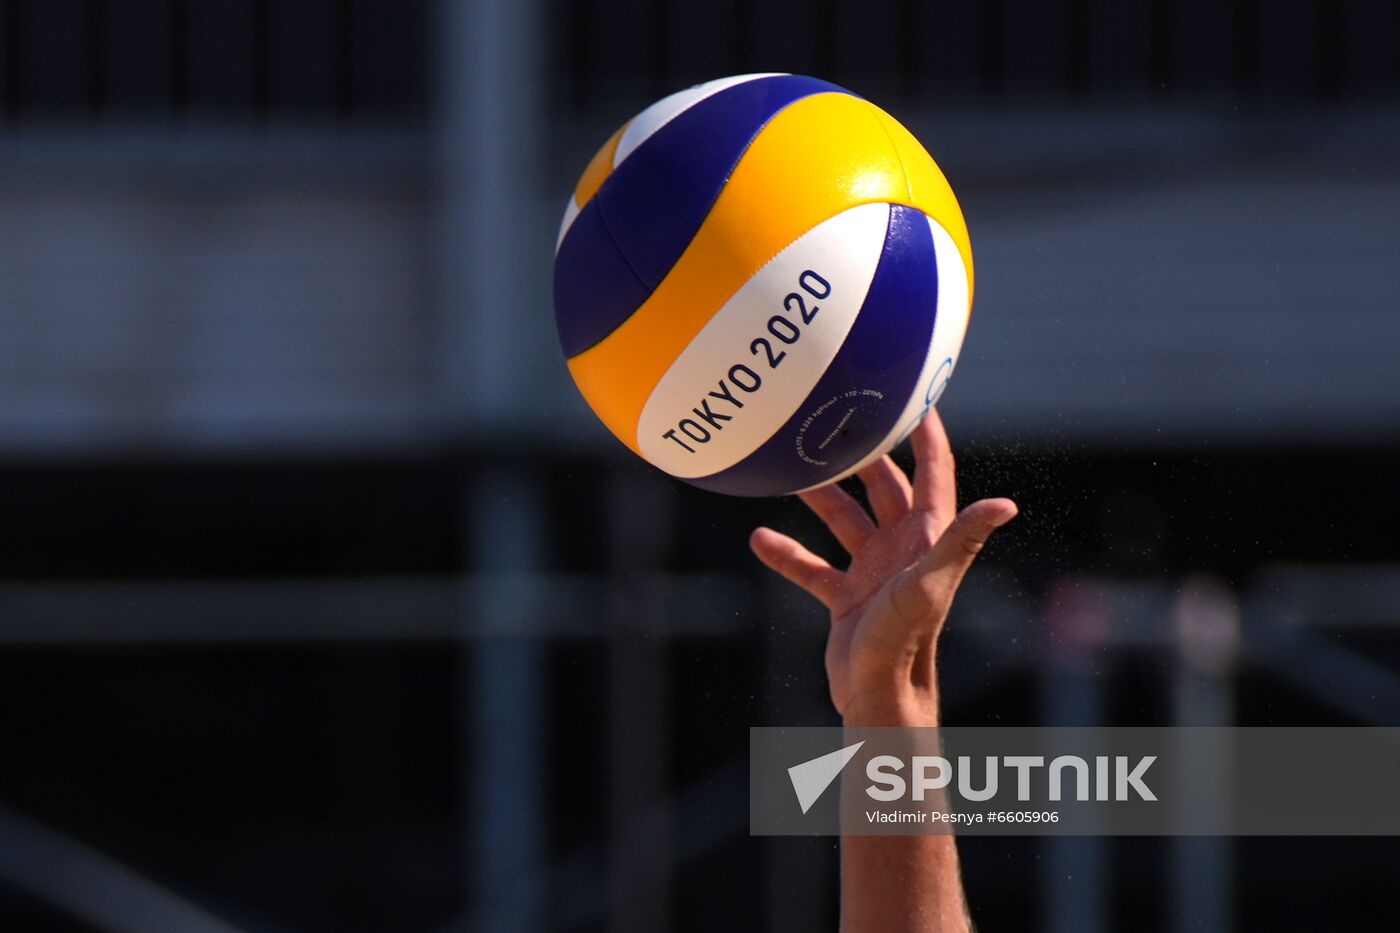 Japan Olympics 2020 Beach Volleyball Makroguzova/Kholomina - Menegatti/Orsi Toth